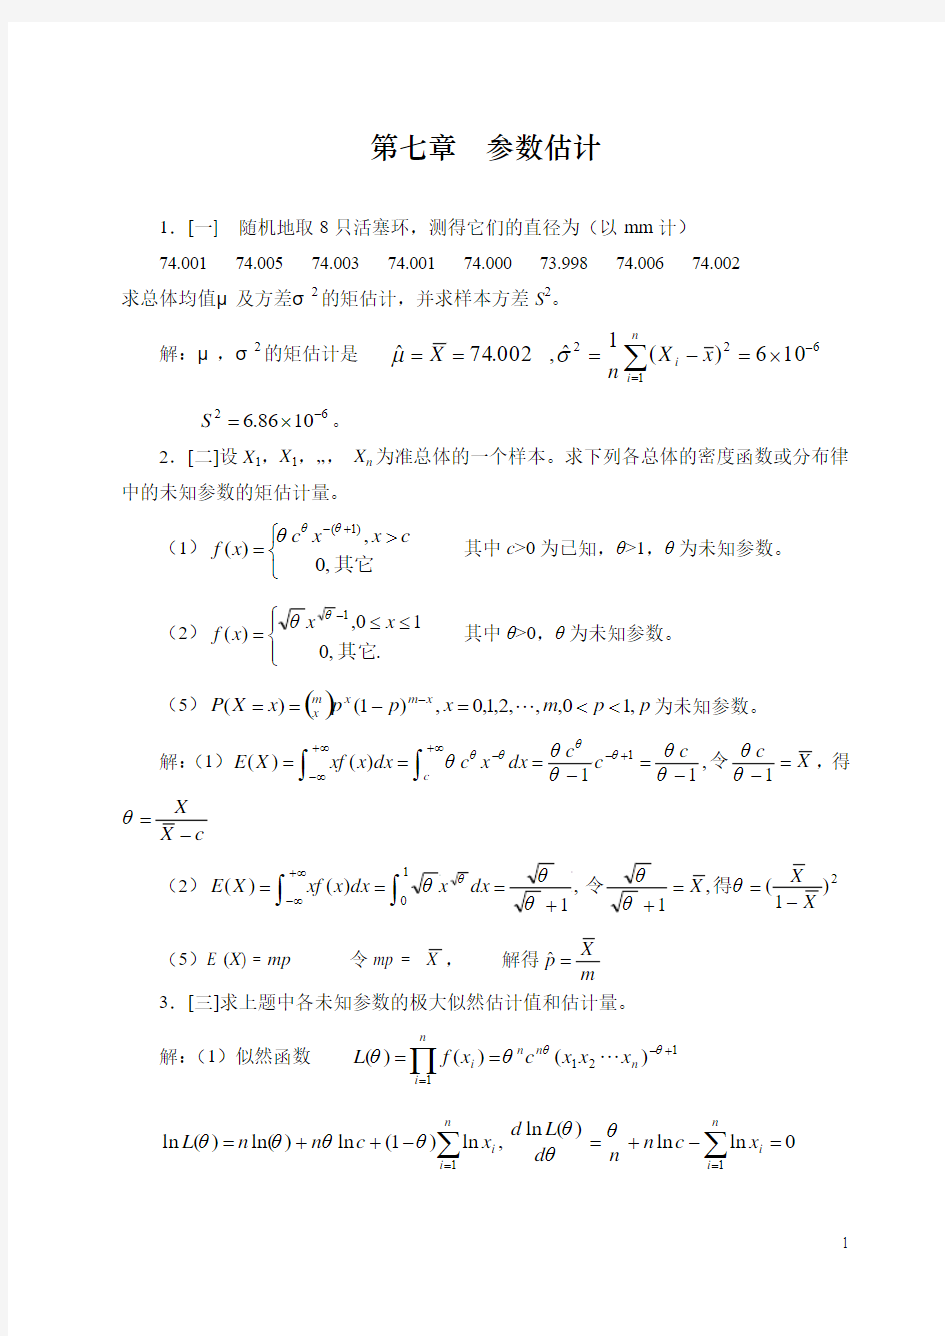 概率论与数理统计第四版-课后习题答案_盛骤__浙江大学第七八章